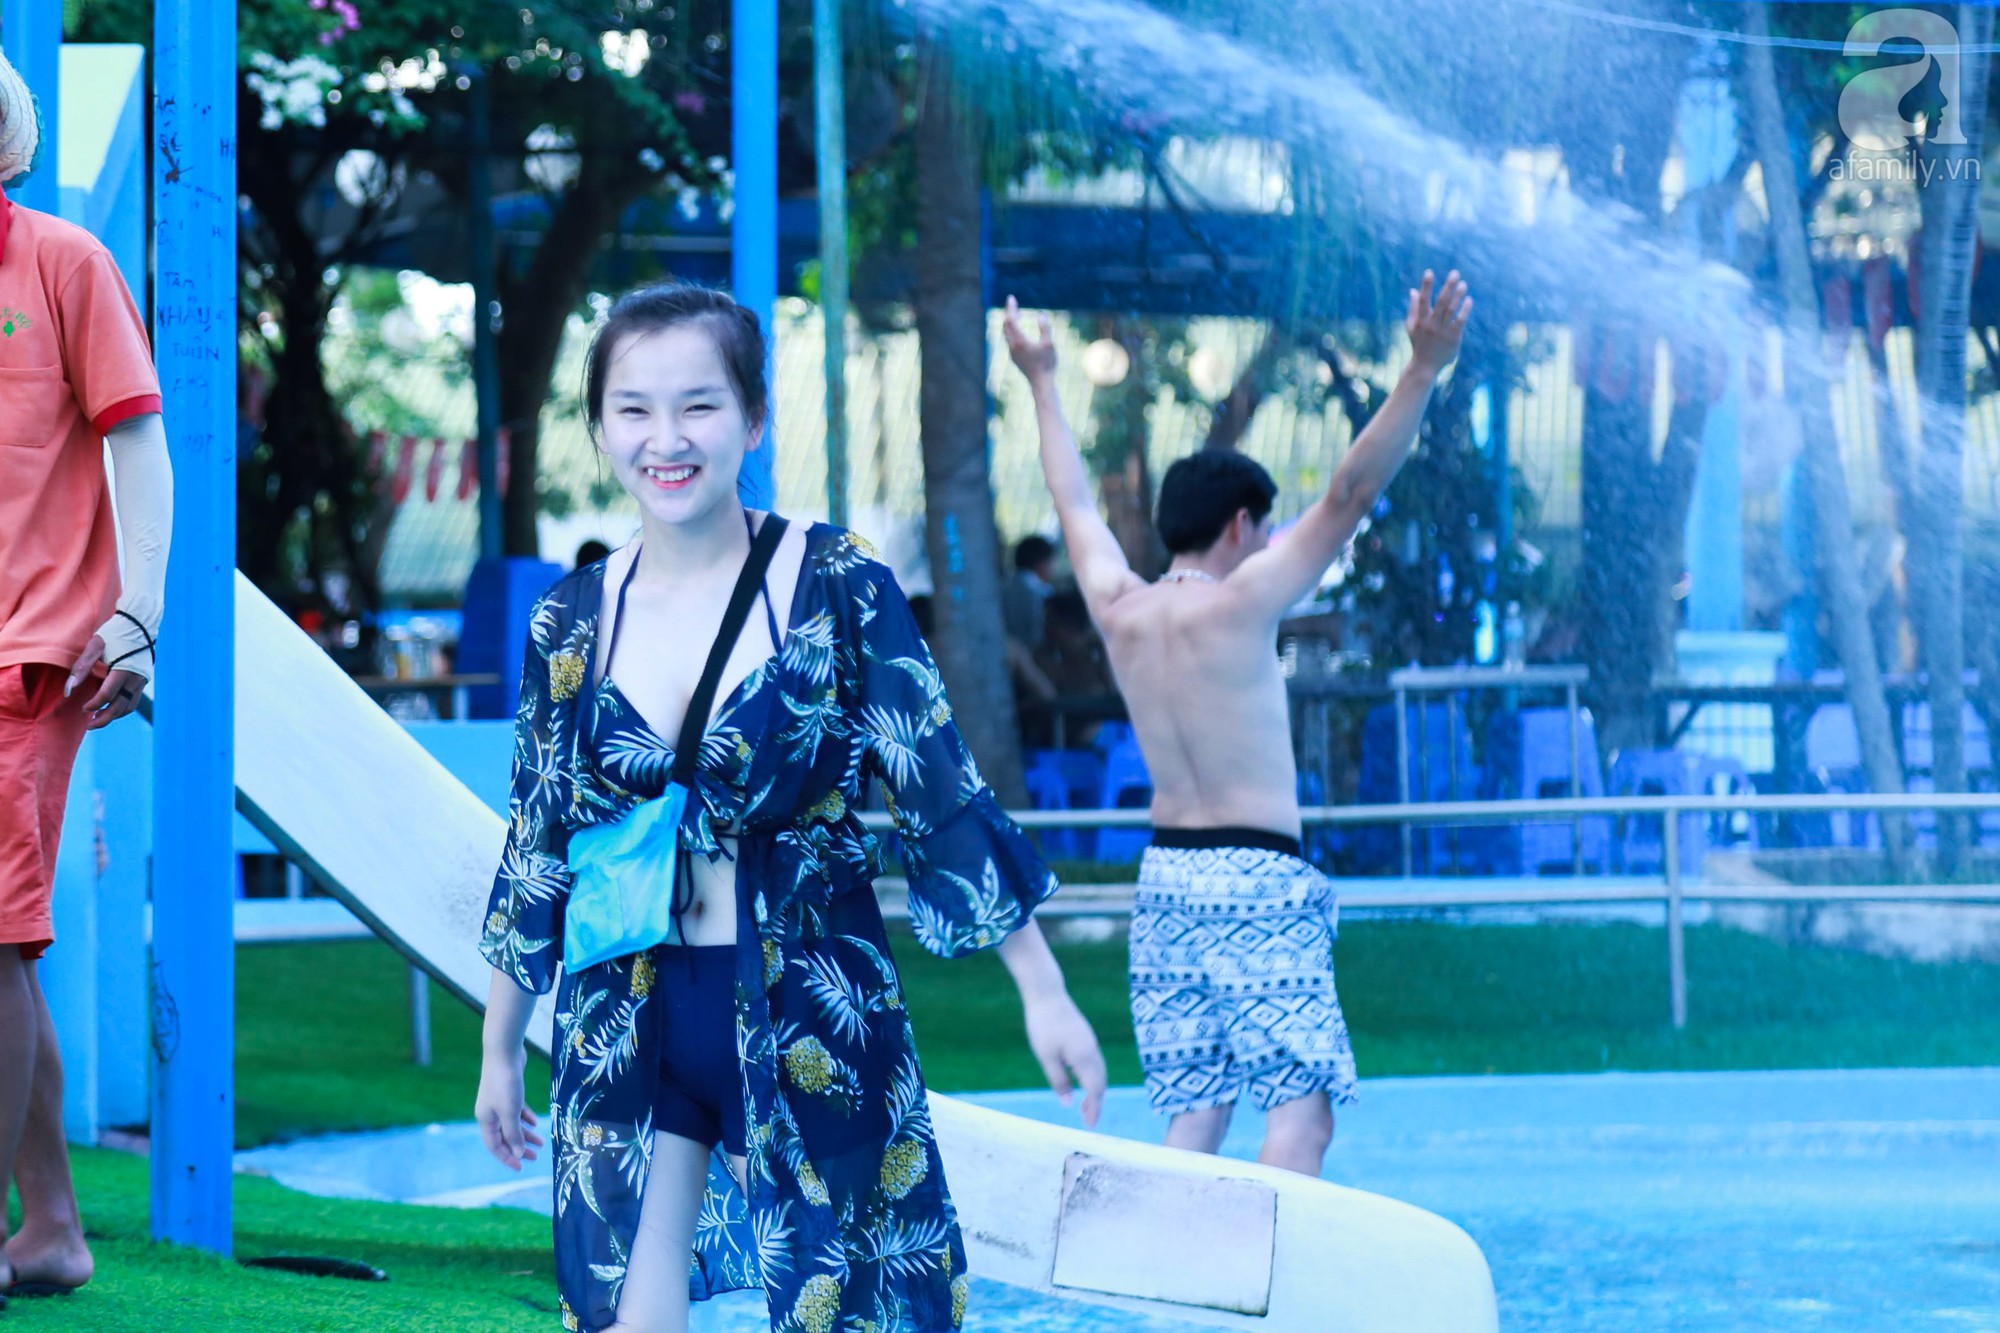 Chùm ảnh: Dân tình thoả sức vùng vẫy giải nhiệt tại “bể bơi” lớn nhất Hà Nội - Ảnh 11.